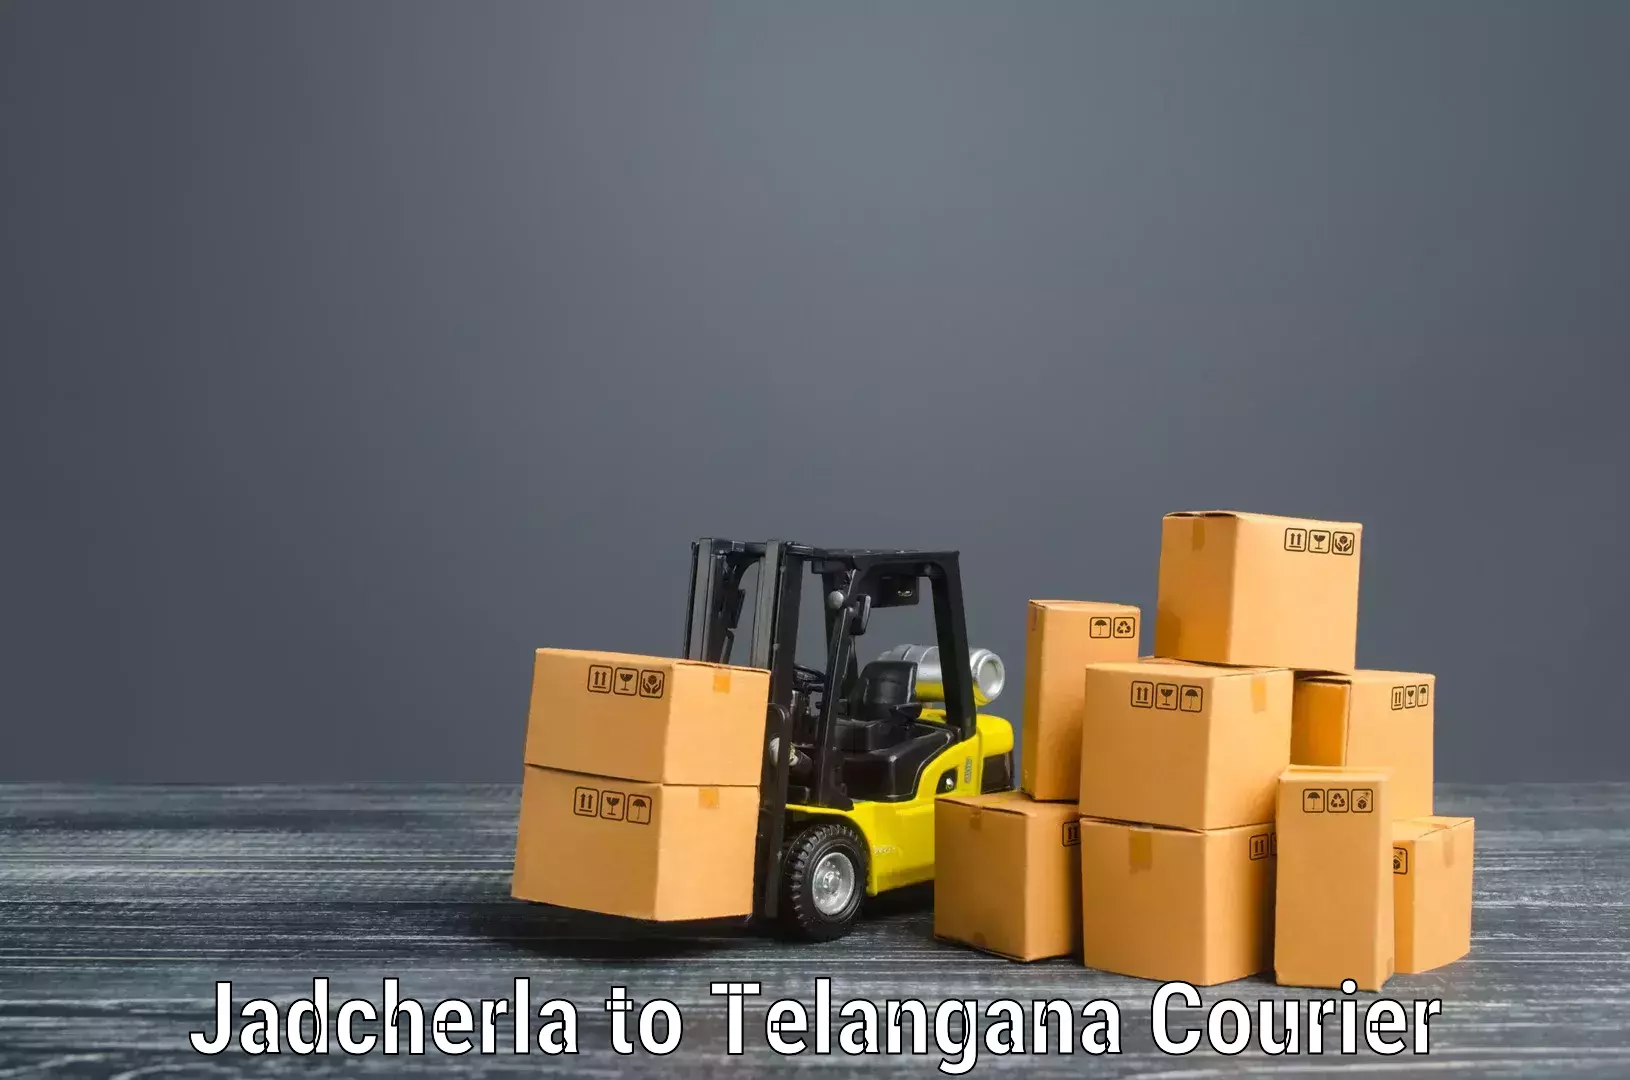 Furniture moving plans Jadcherla to Gangadhara